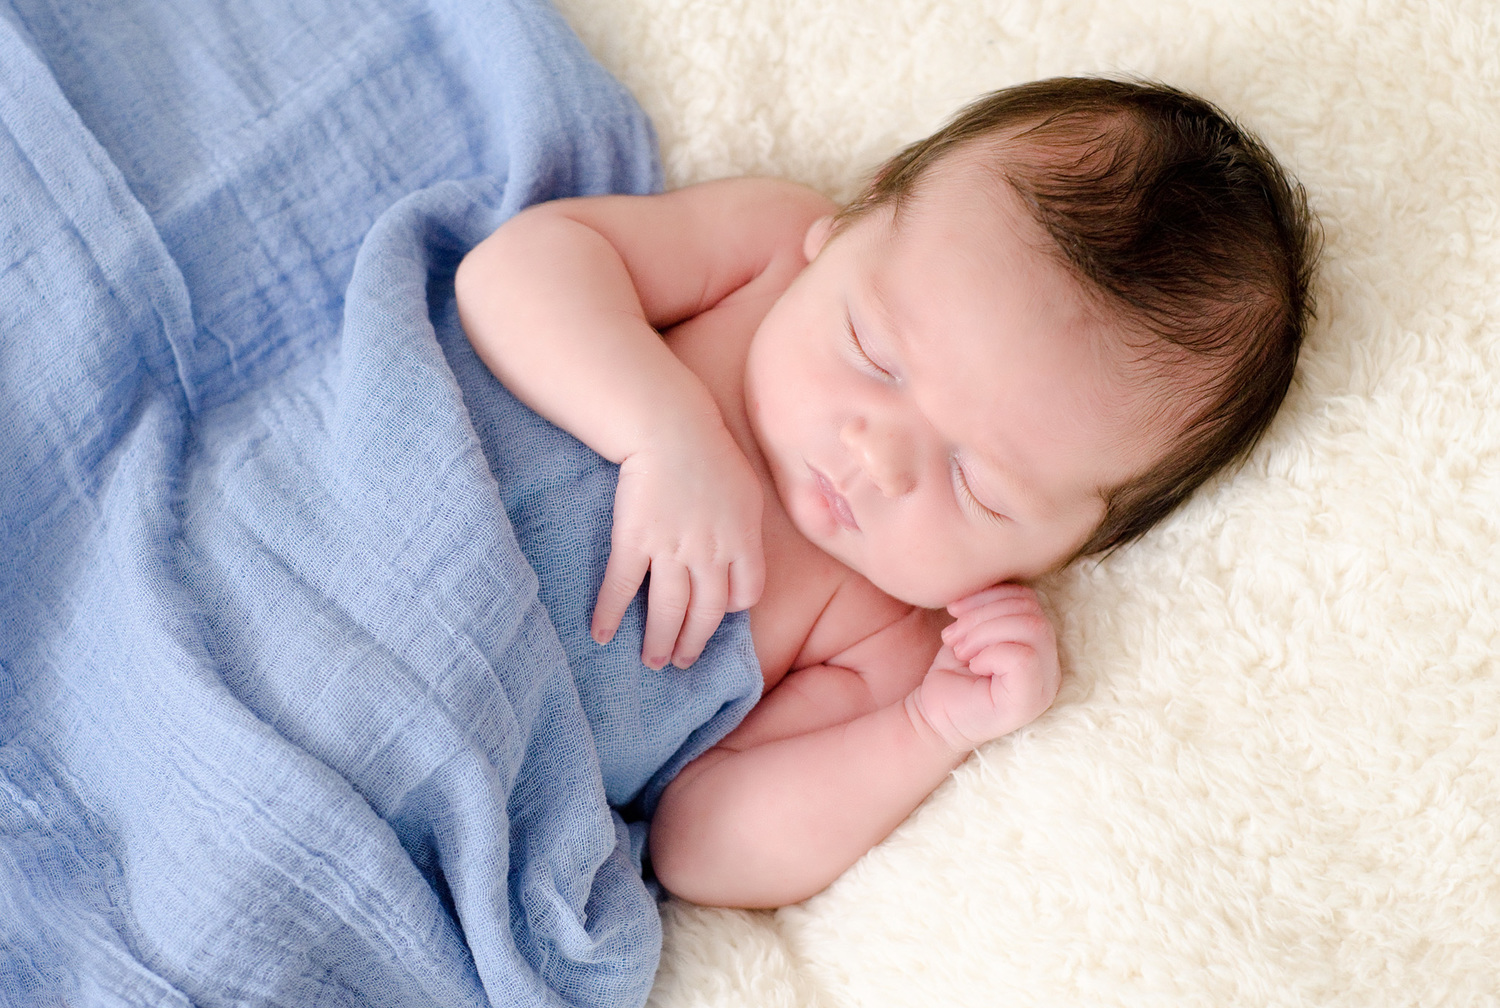 newborn-baby-photography-derry-n'ireland.jpg